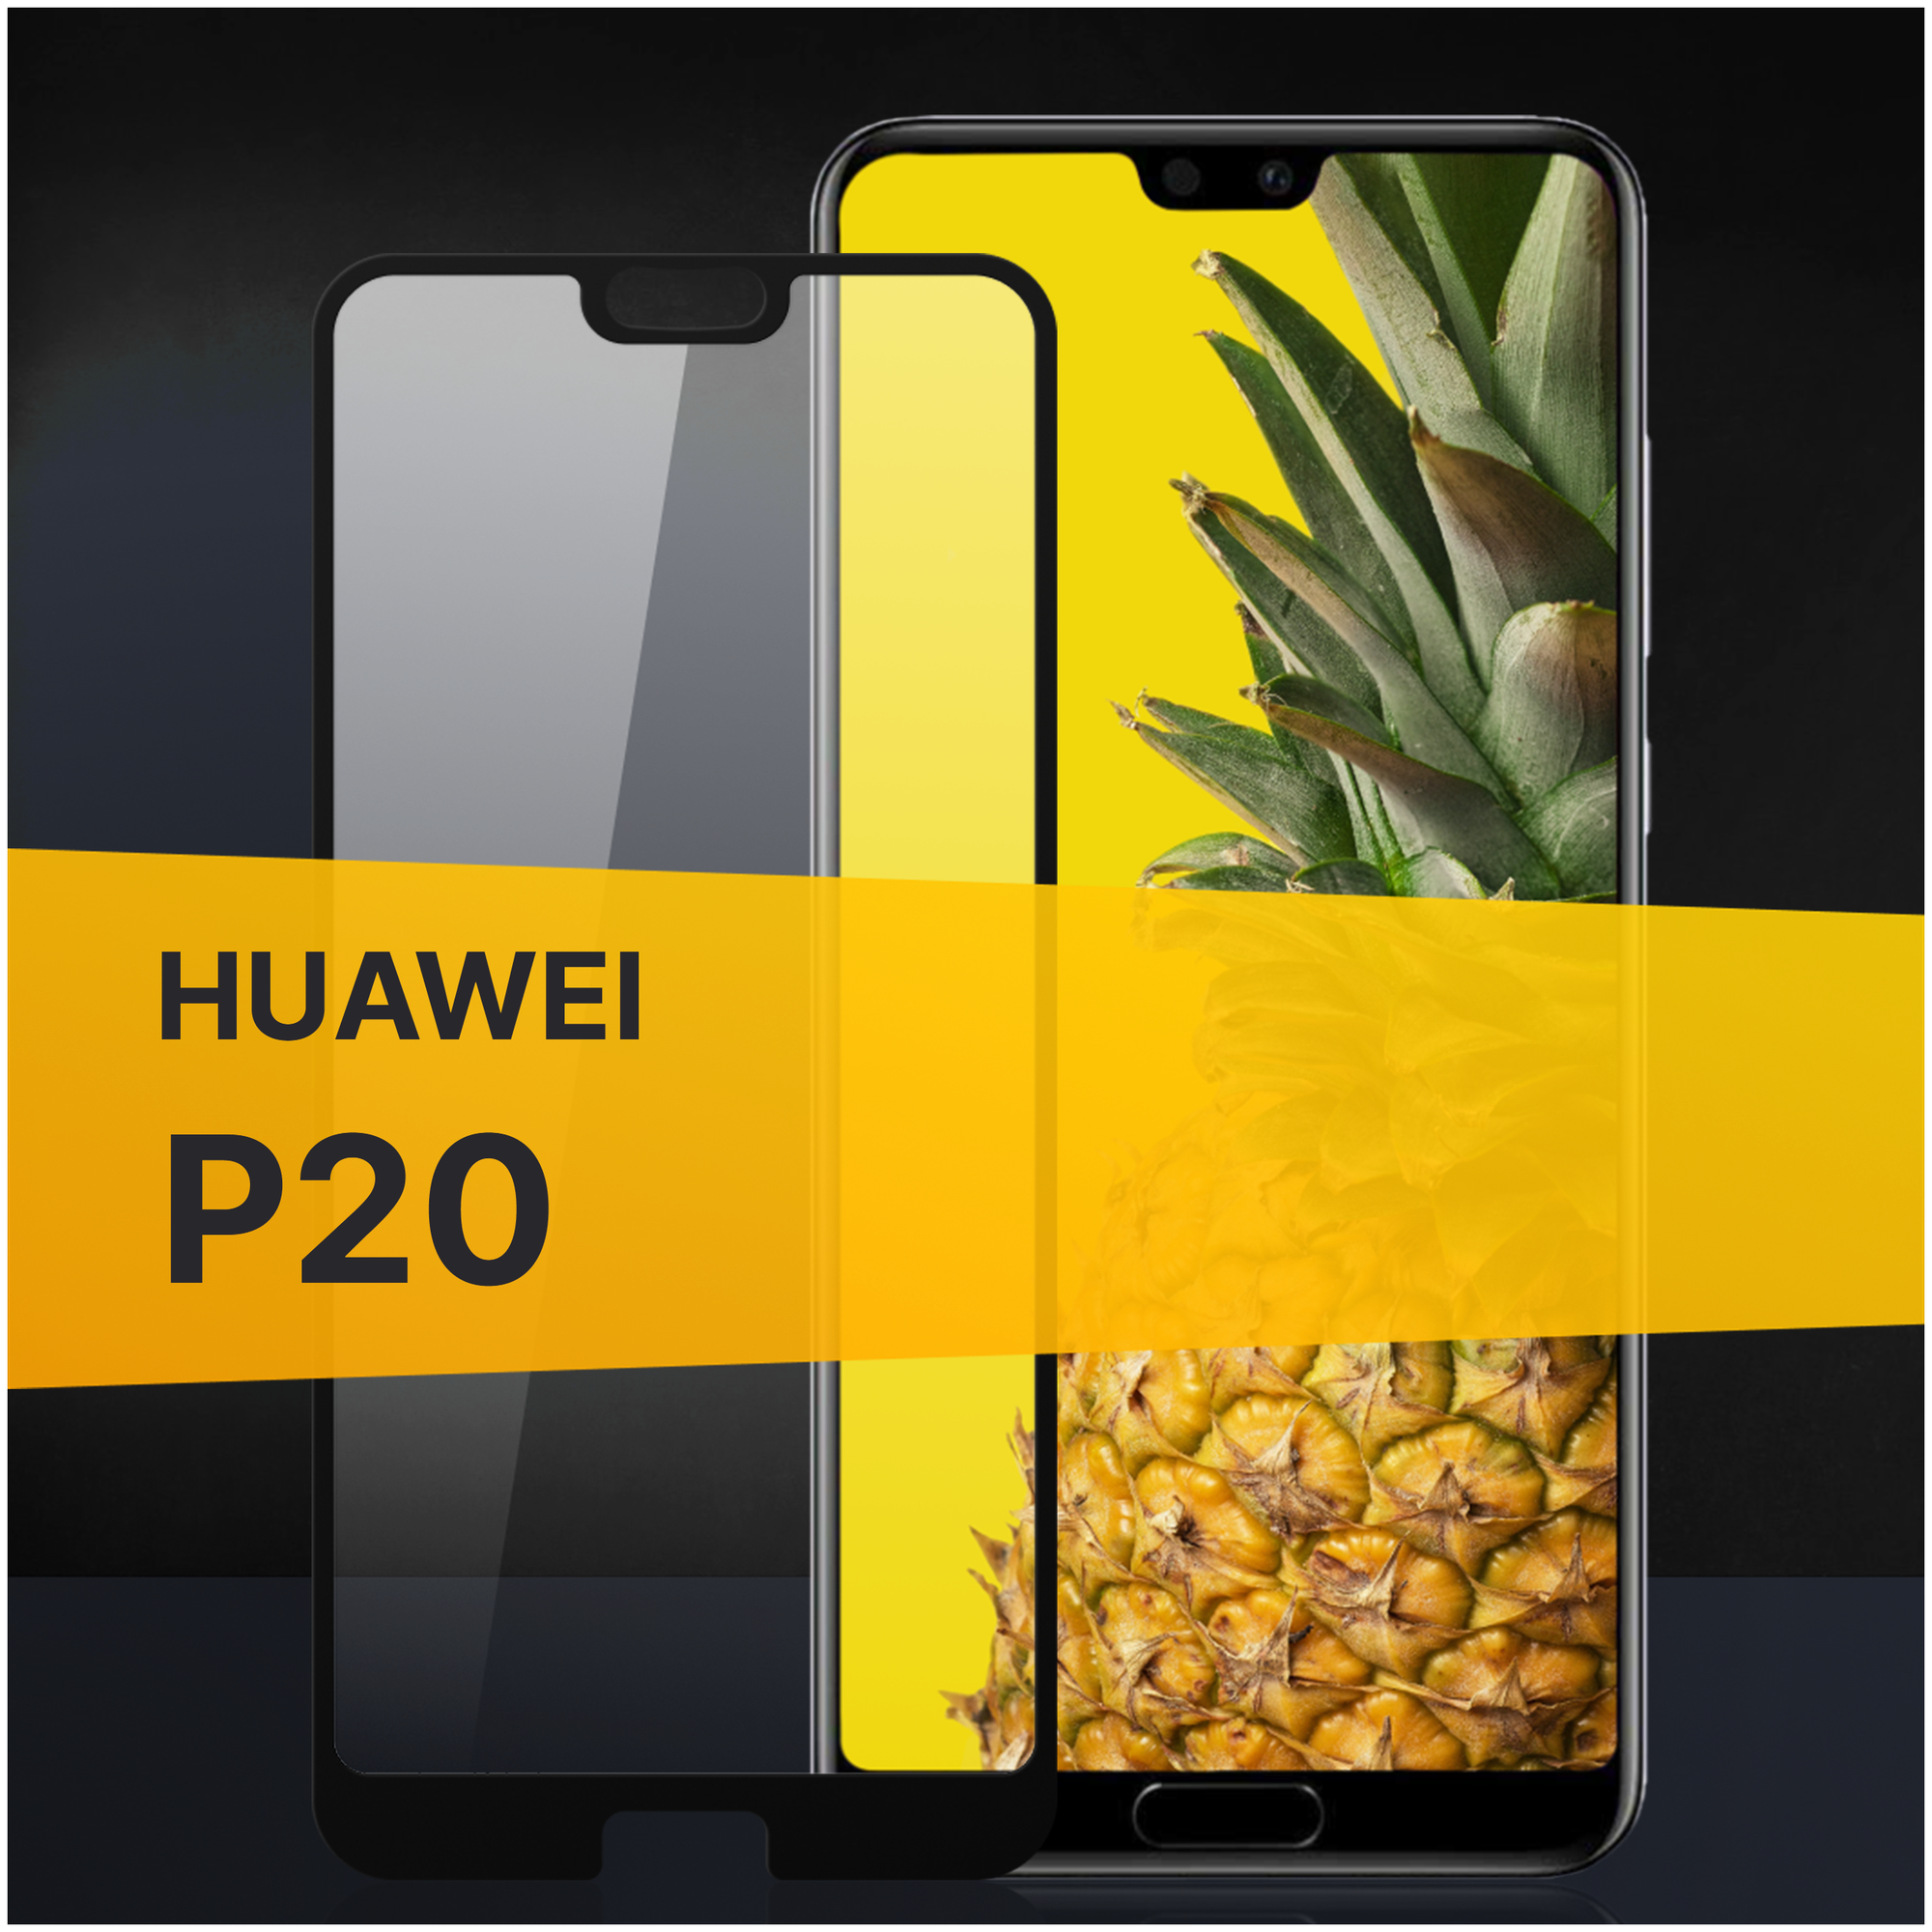 Противоударное защитное стекло для телефона Huawei P20 / Полноклеевое 3D стекло с олеофобным покрытием на смартфон Хуавей П20 / С черной рамкой